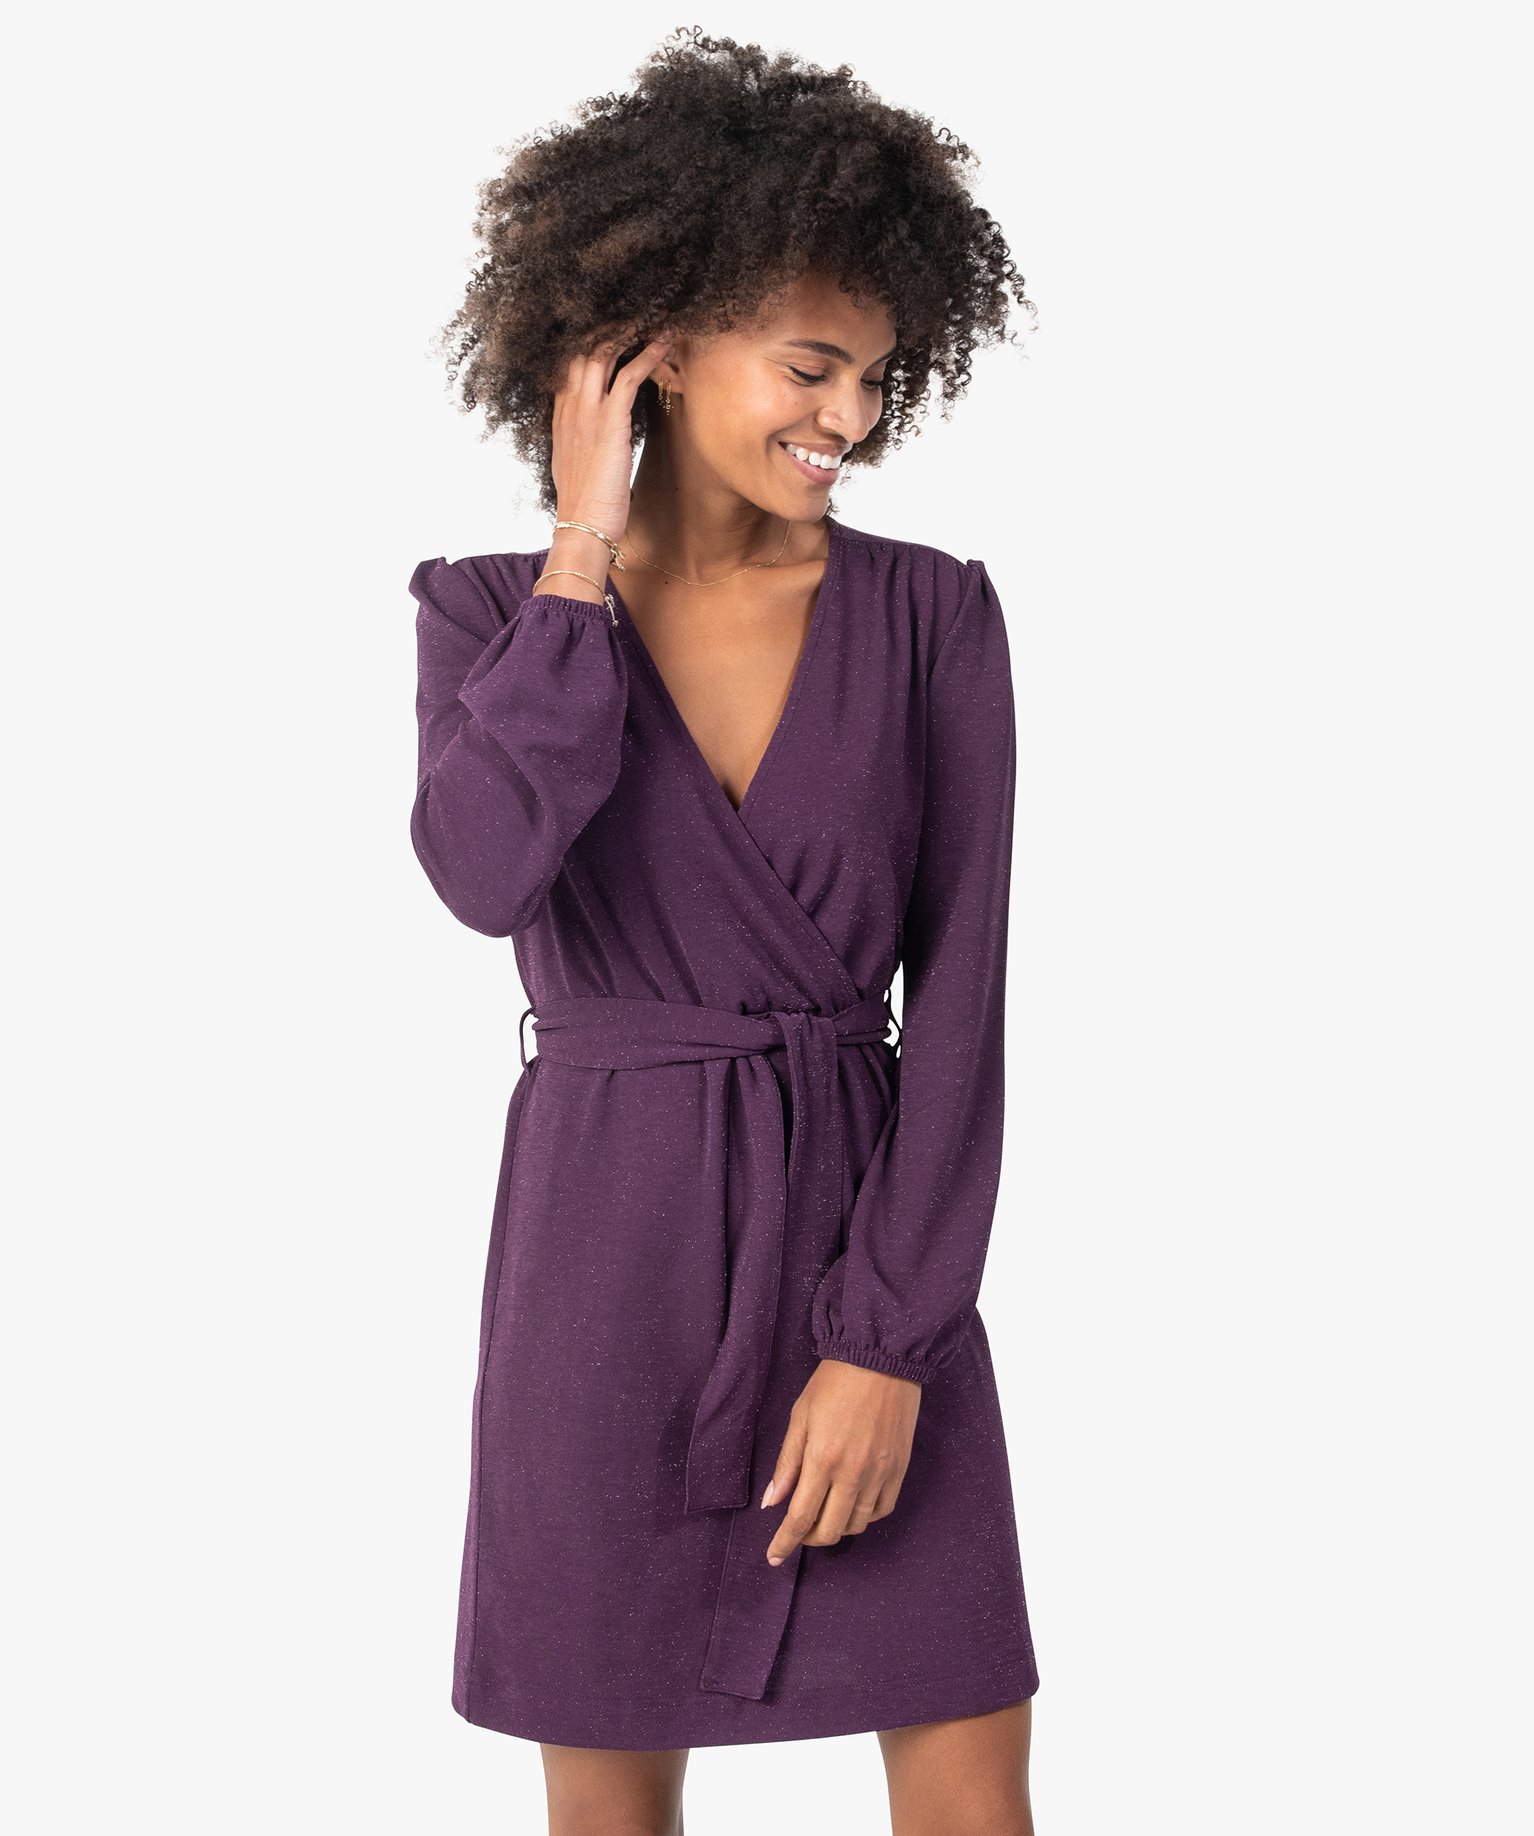 robe femme pailletee avec haut cache-cour violet